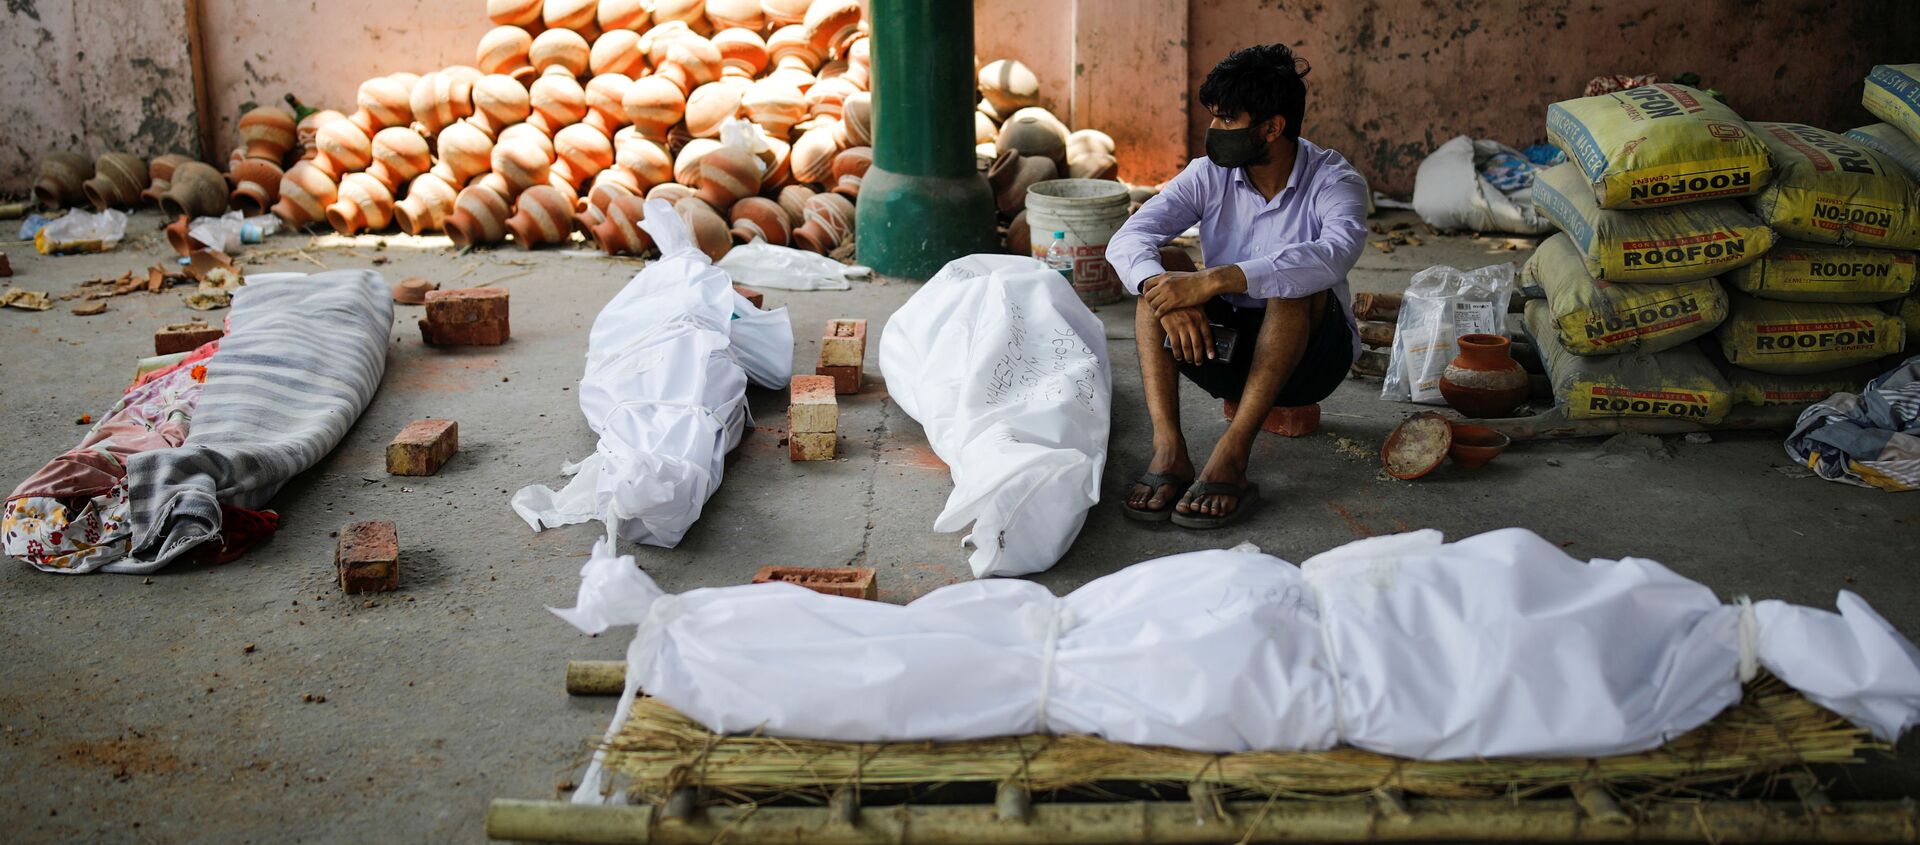 Người đàn ông ngồi bên cạnh thi thể của những người chết vì COVID trước khi thiêu xác hàng loạt tại nhà hỏa táng ở New Delhi, Ấn Độ - Sputnik Việt Nam, 1920, 12.05.2021